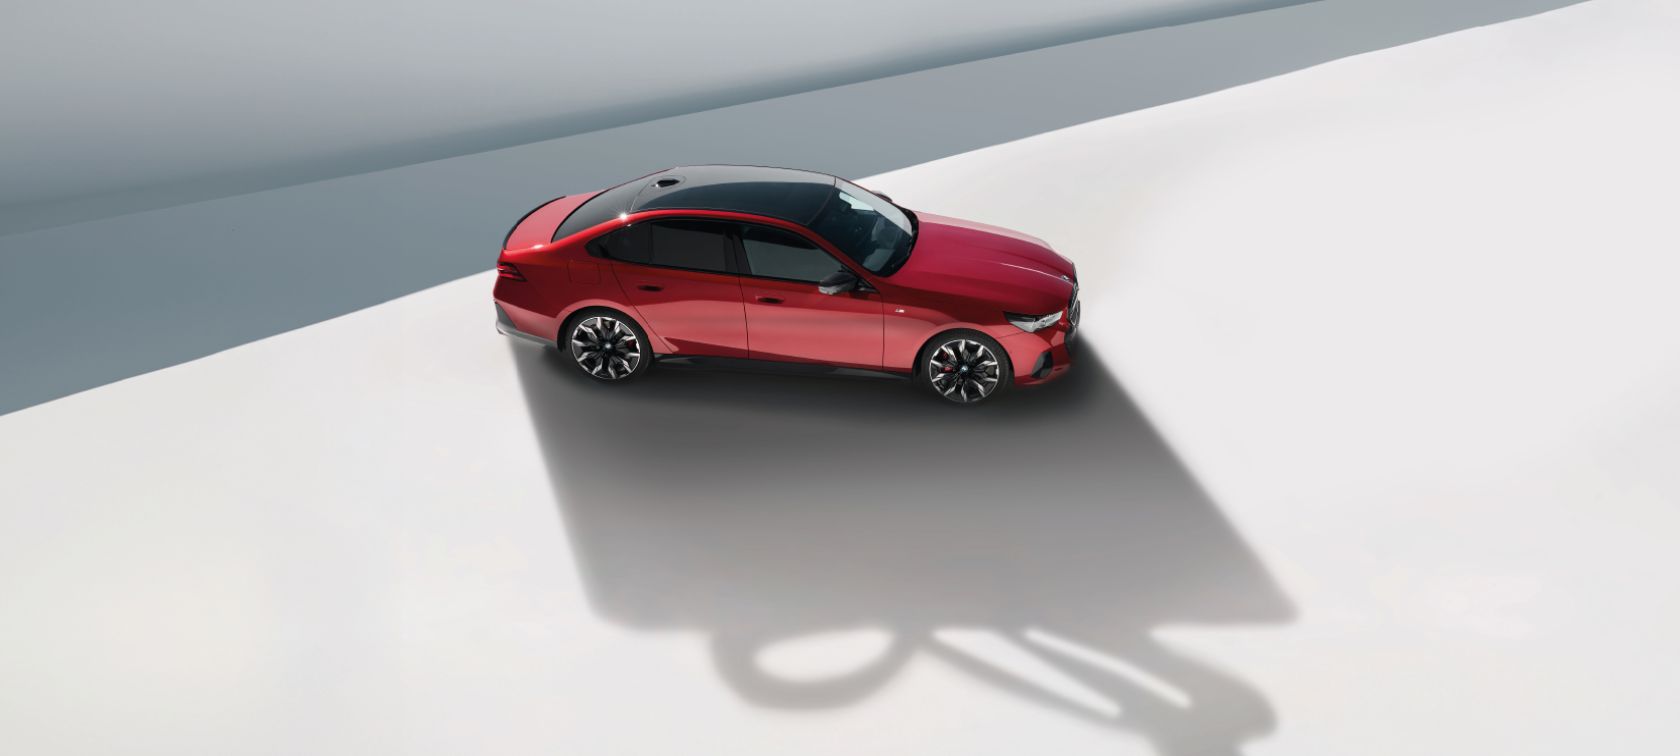 Wybierz nowe BMW dostępne od ręki z niespodzianką w bagażniku. Skorzystaj ze specjalnej oferty na komplet oryginalnych kół zimowych BMW za połowę ceny.